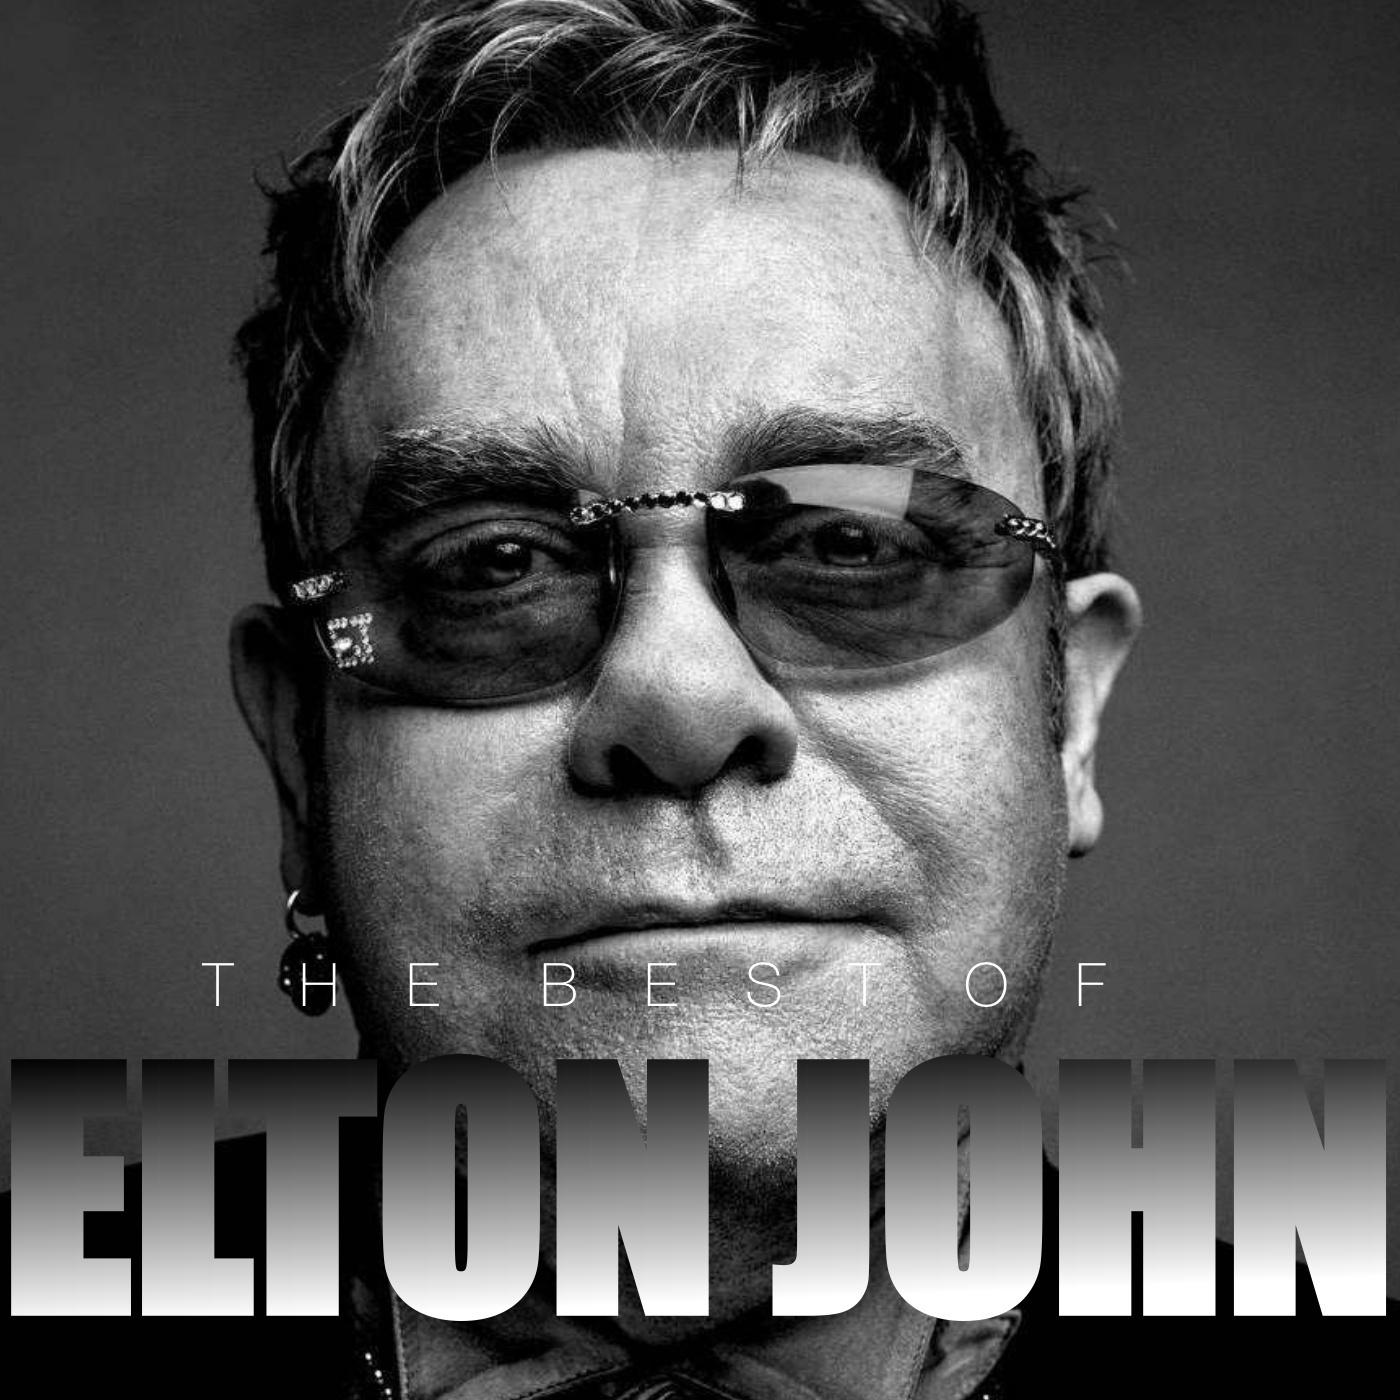 The Best Of Elton John